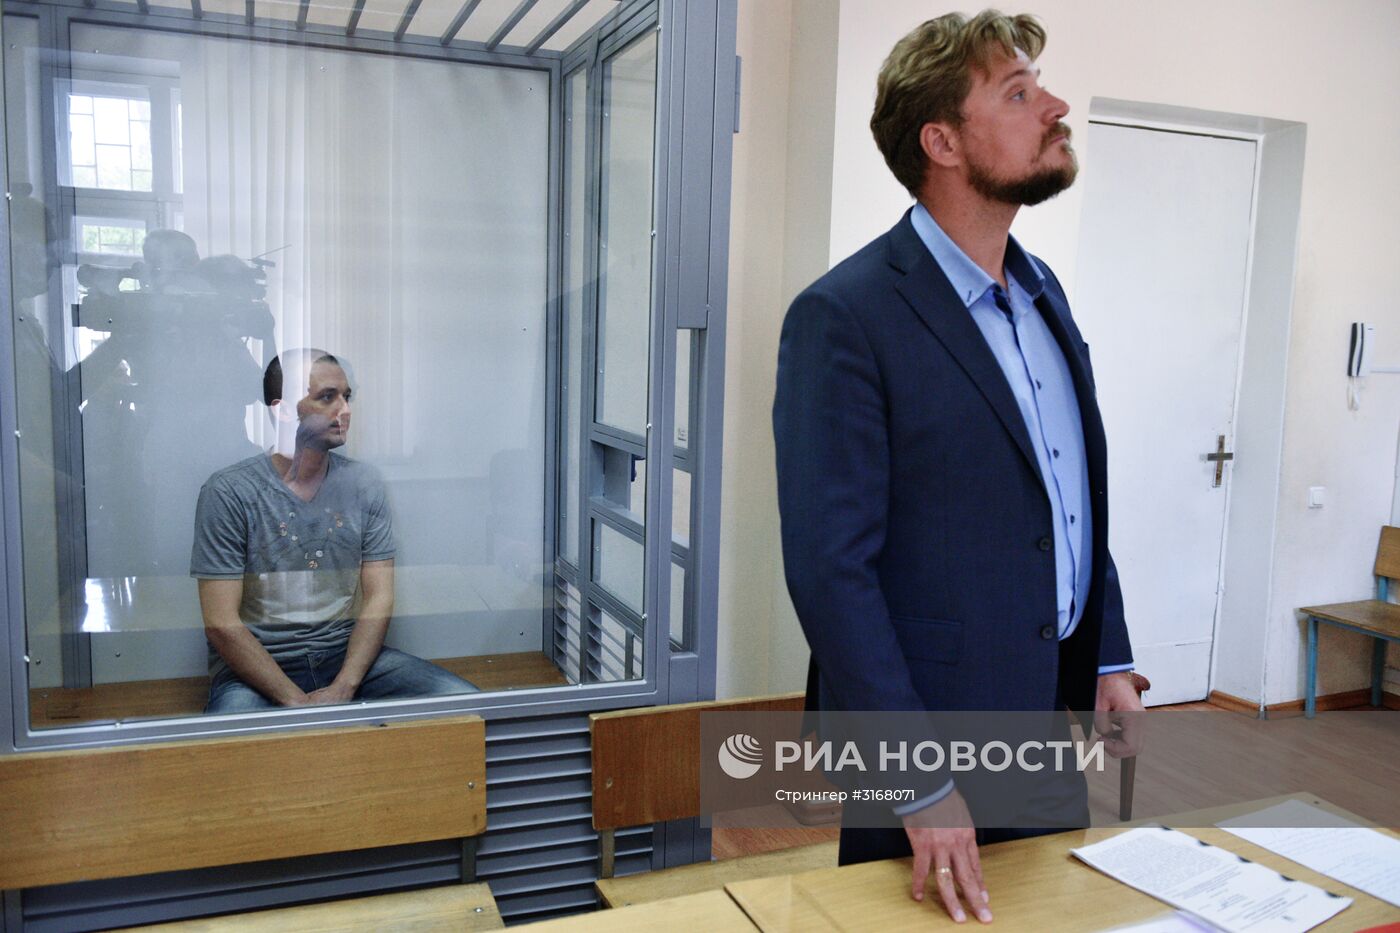 Заседание по делу похищенного СБУ российского военнослужащего М. Одинцова в Киеве